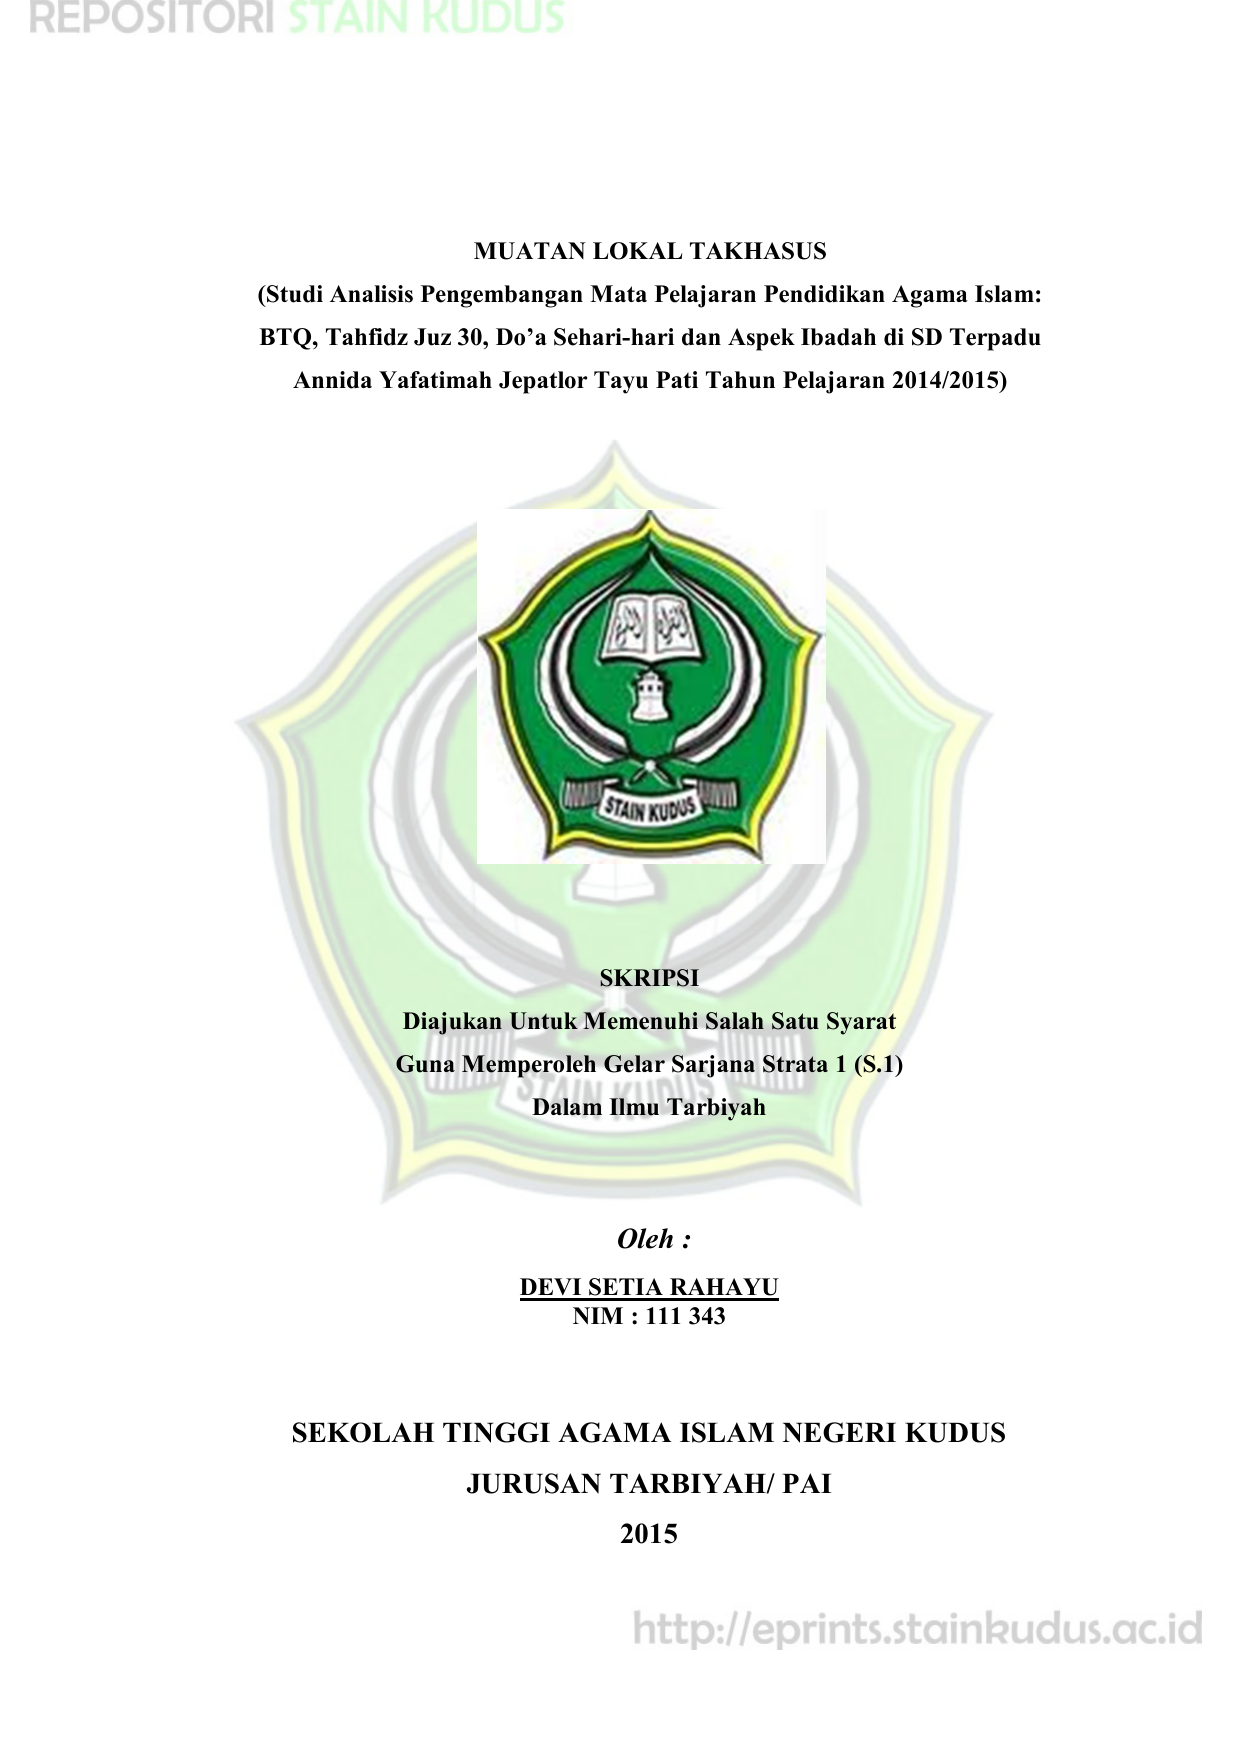 Oleh Sekolah Tinggi Agama Islam Negeri Kudus Khilafah Rasyidah The New World Order Download Ebook Pdf Islam